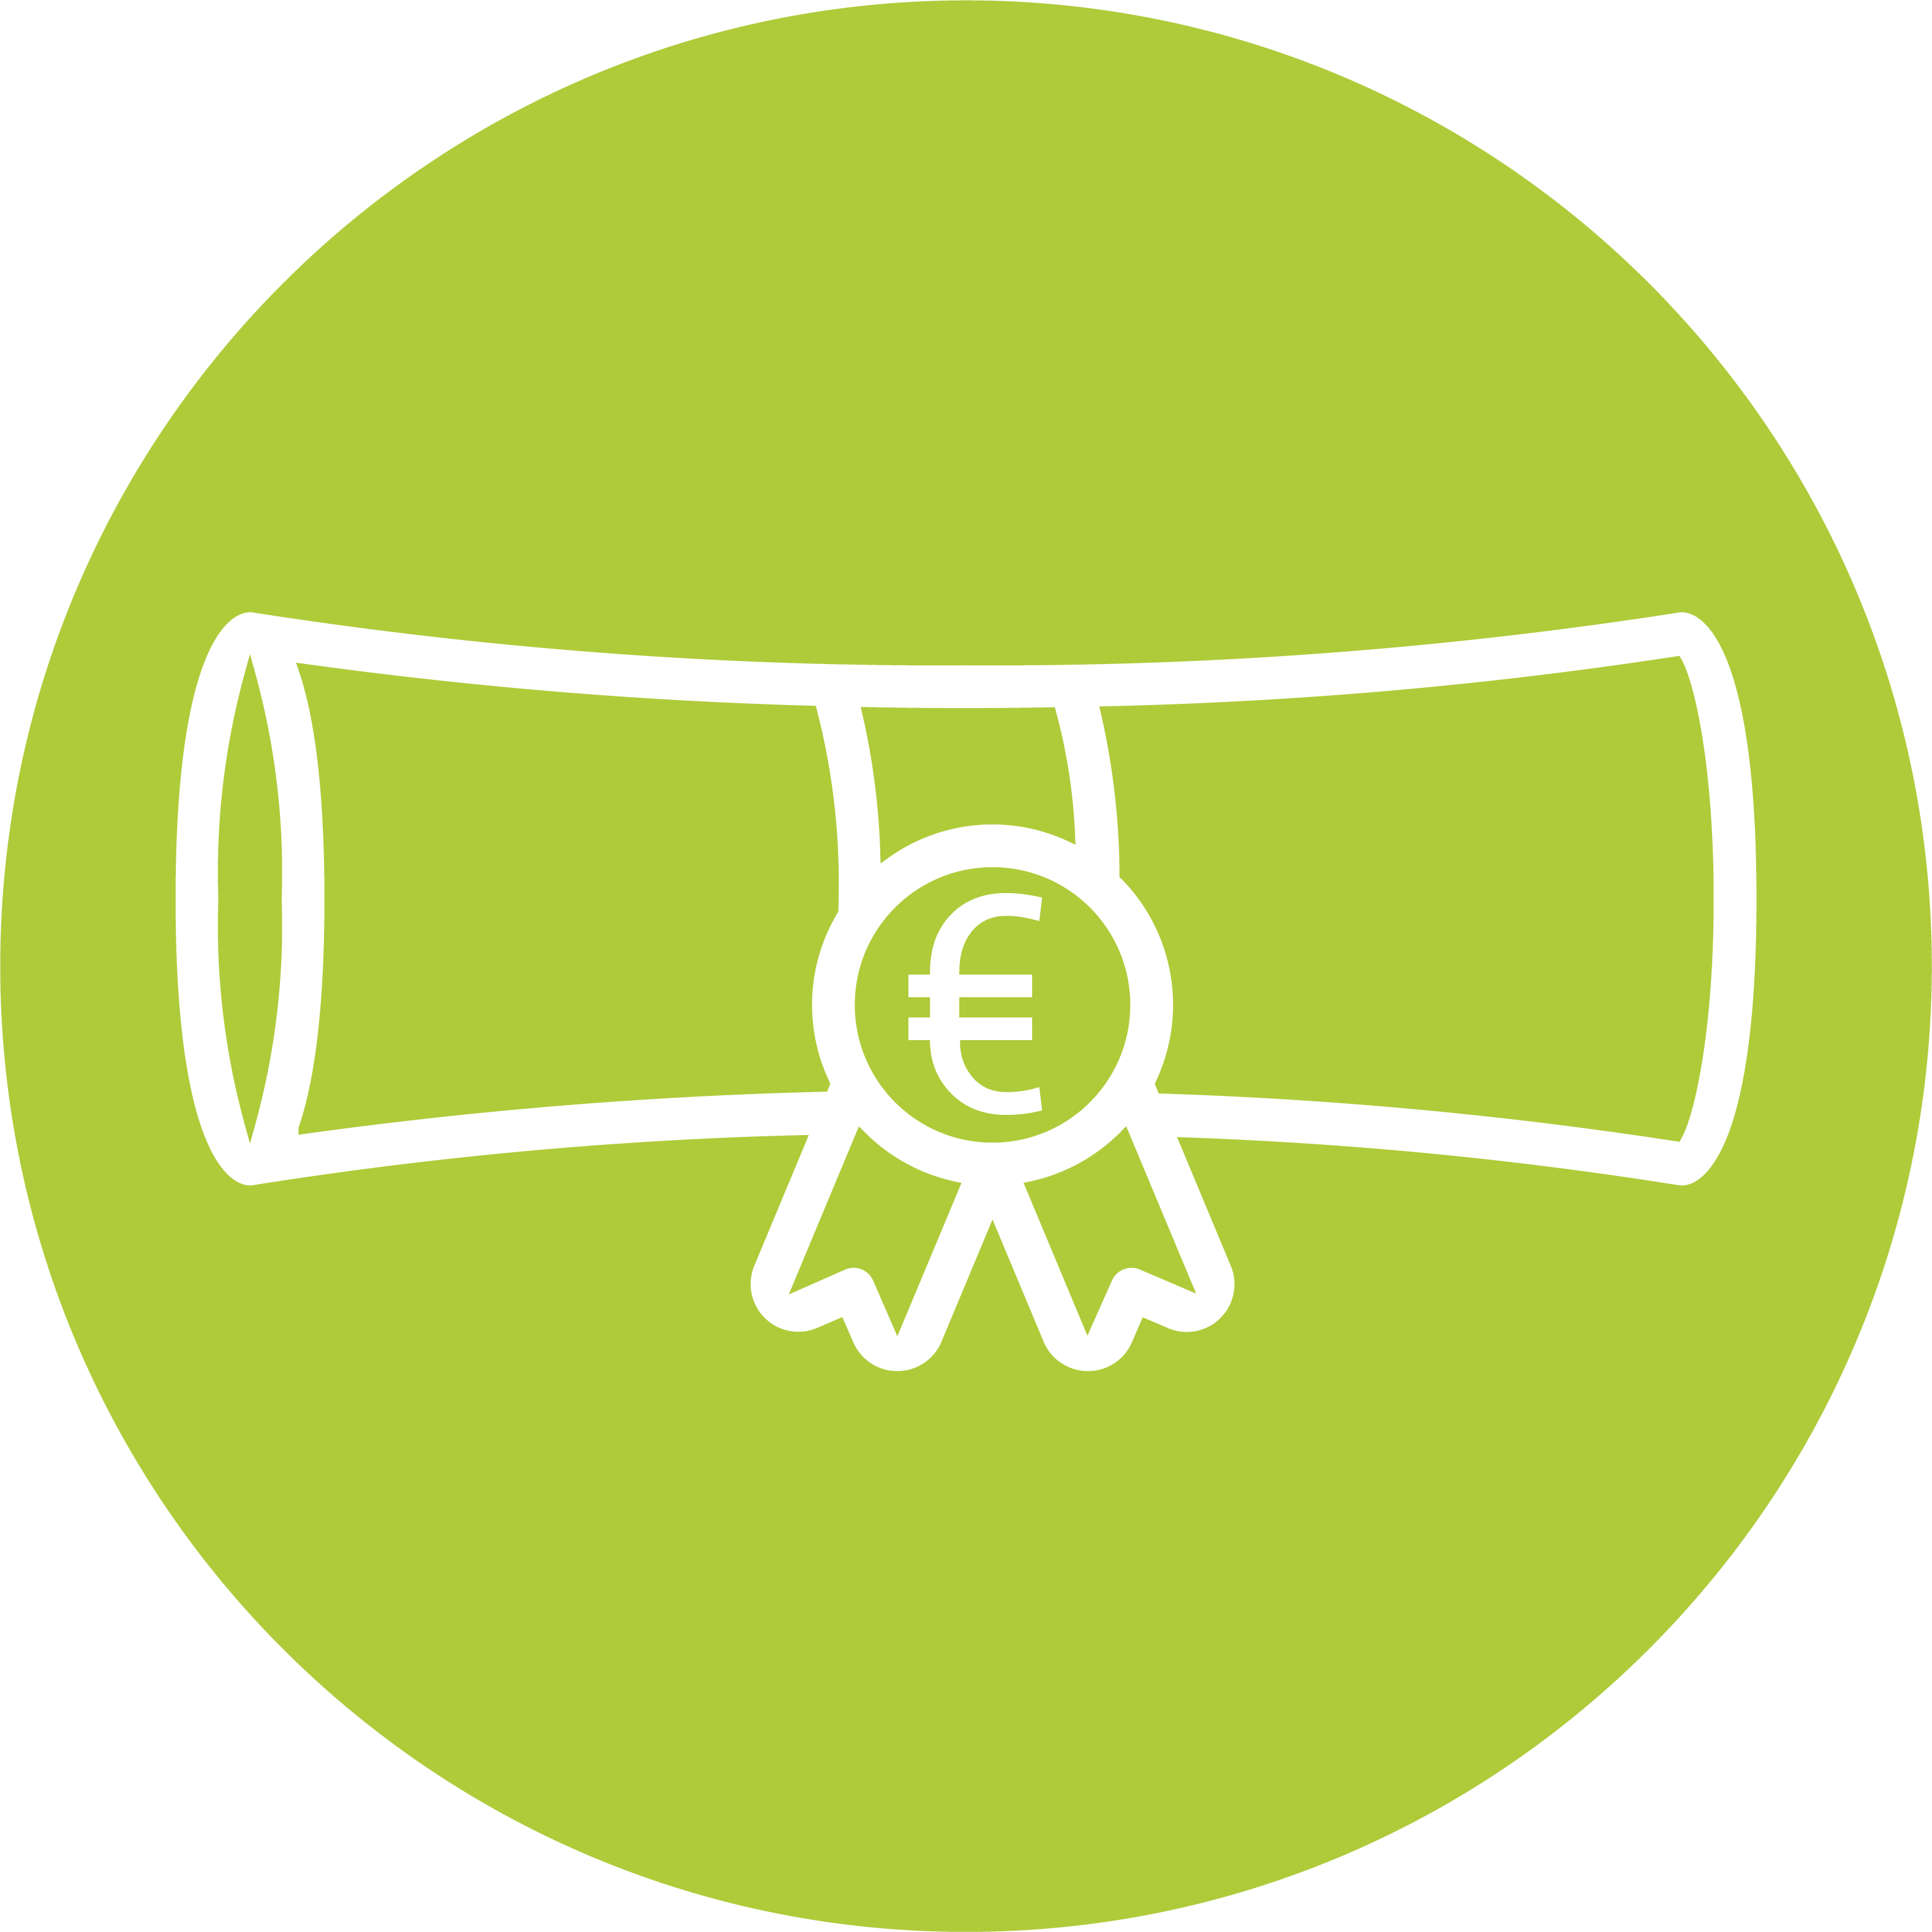 Icon eines zusammgerollten Diploms oder Zertifikats mit einem Euro-Zeichen in Weiß auf einem grünen kreisförmigen Hintergrund, das für unser Weiterbildungsbudget steht.